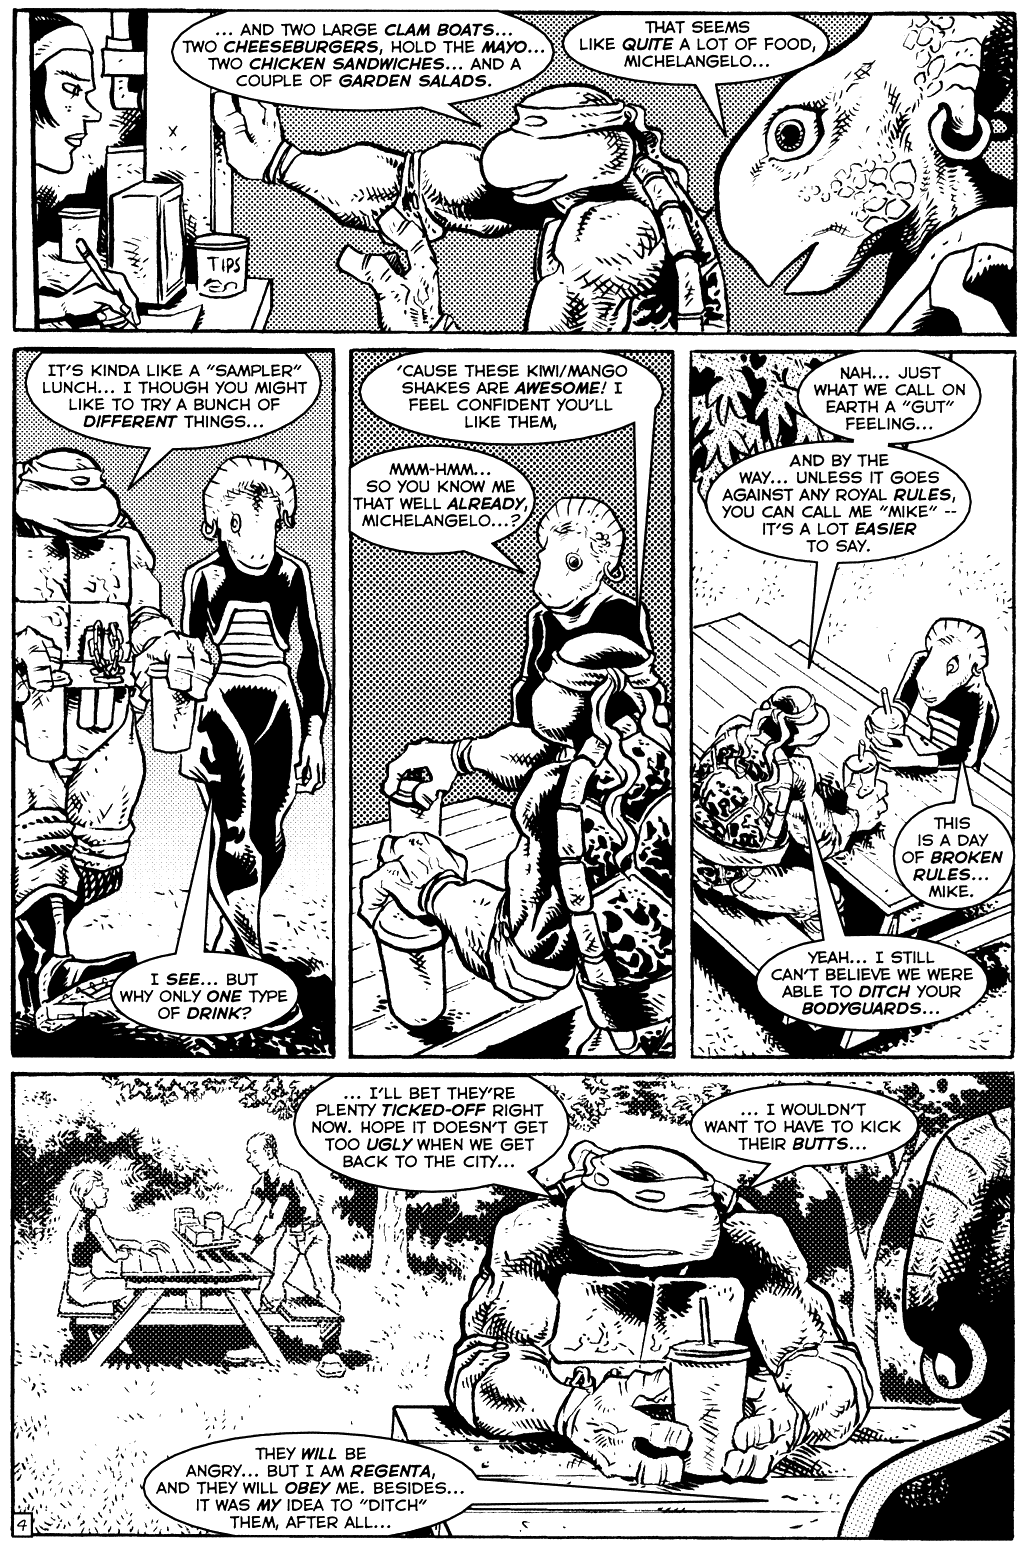 TMNT: Teenage Mutant Ninja Turtles issue 15 - Page 6